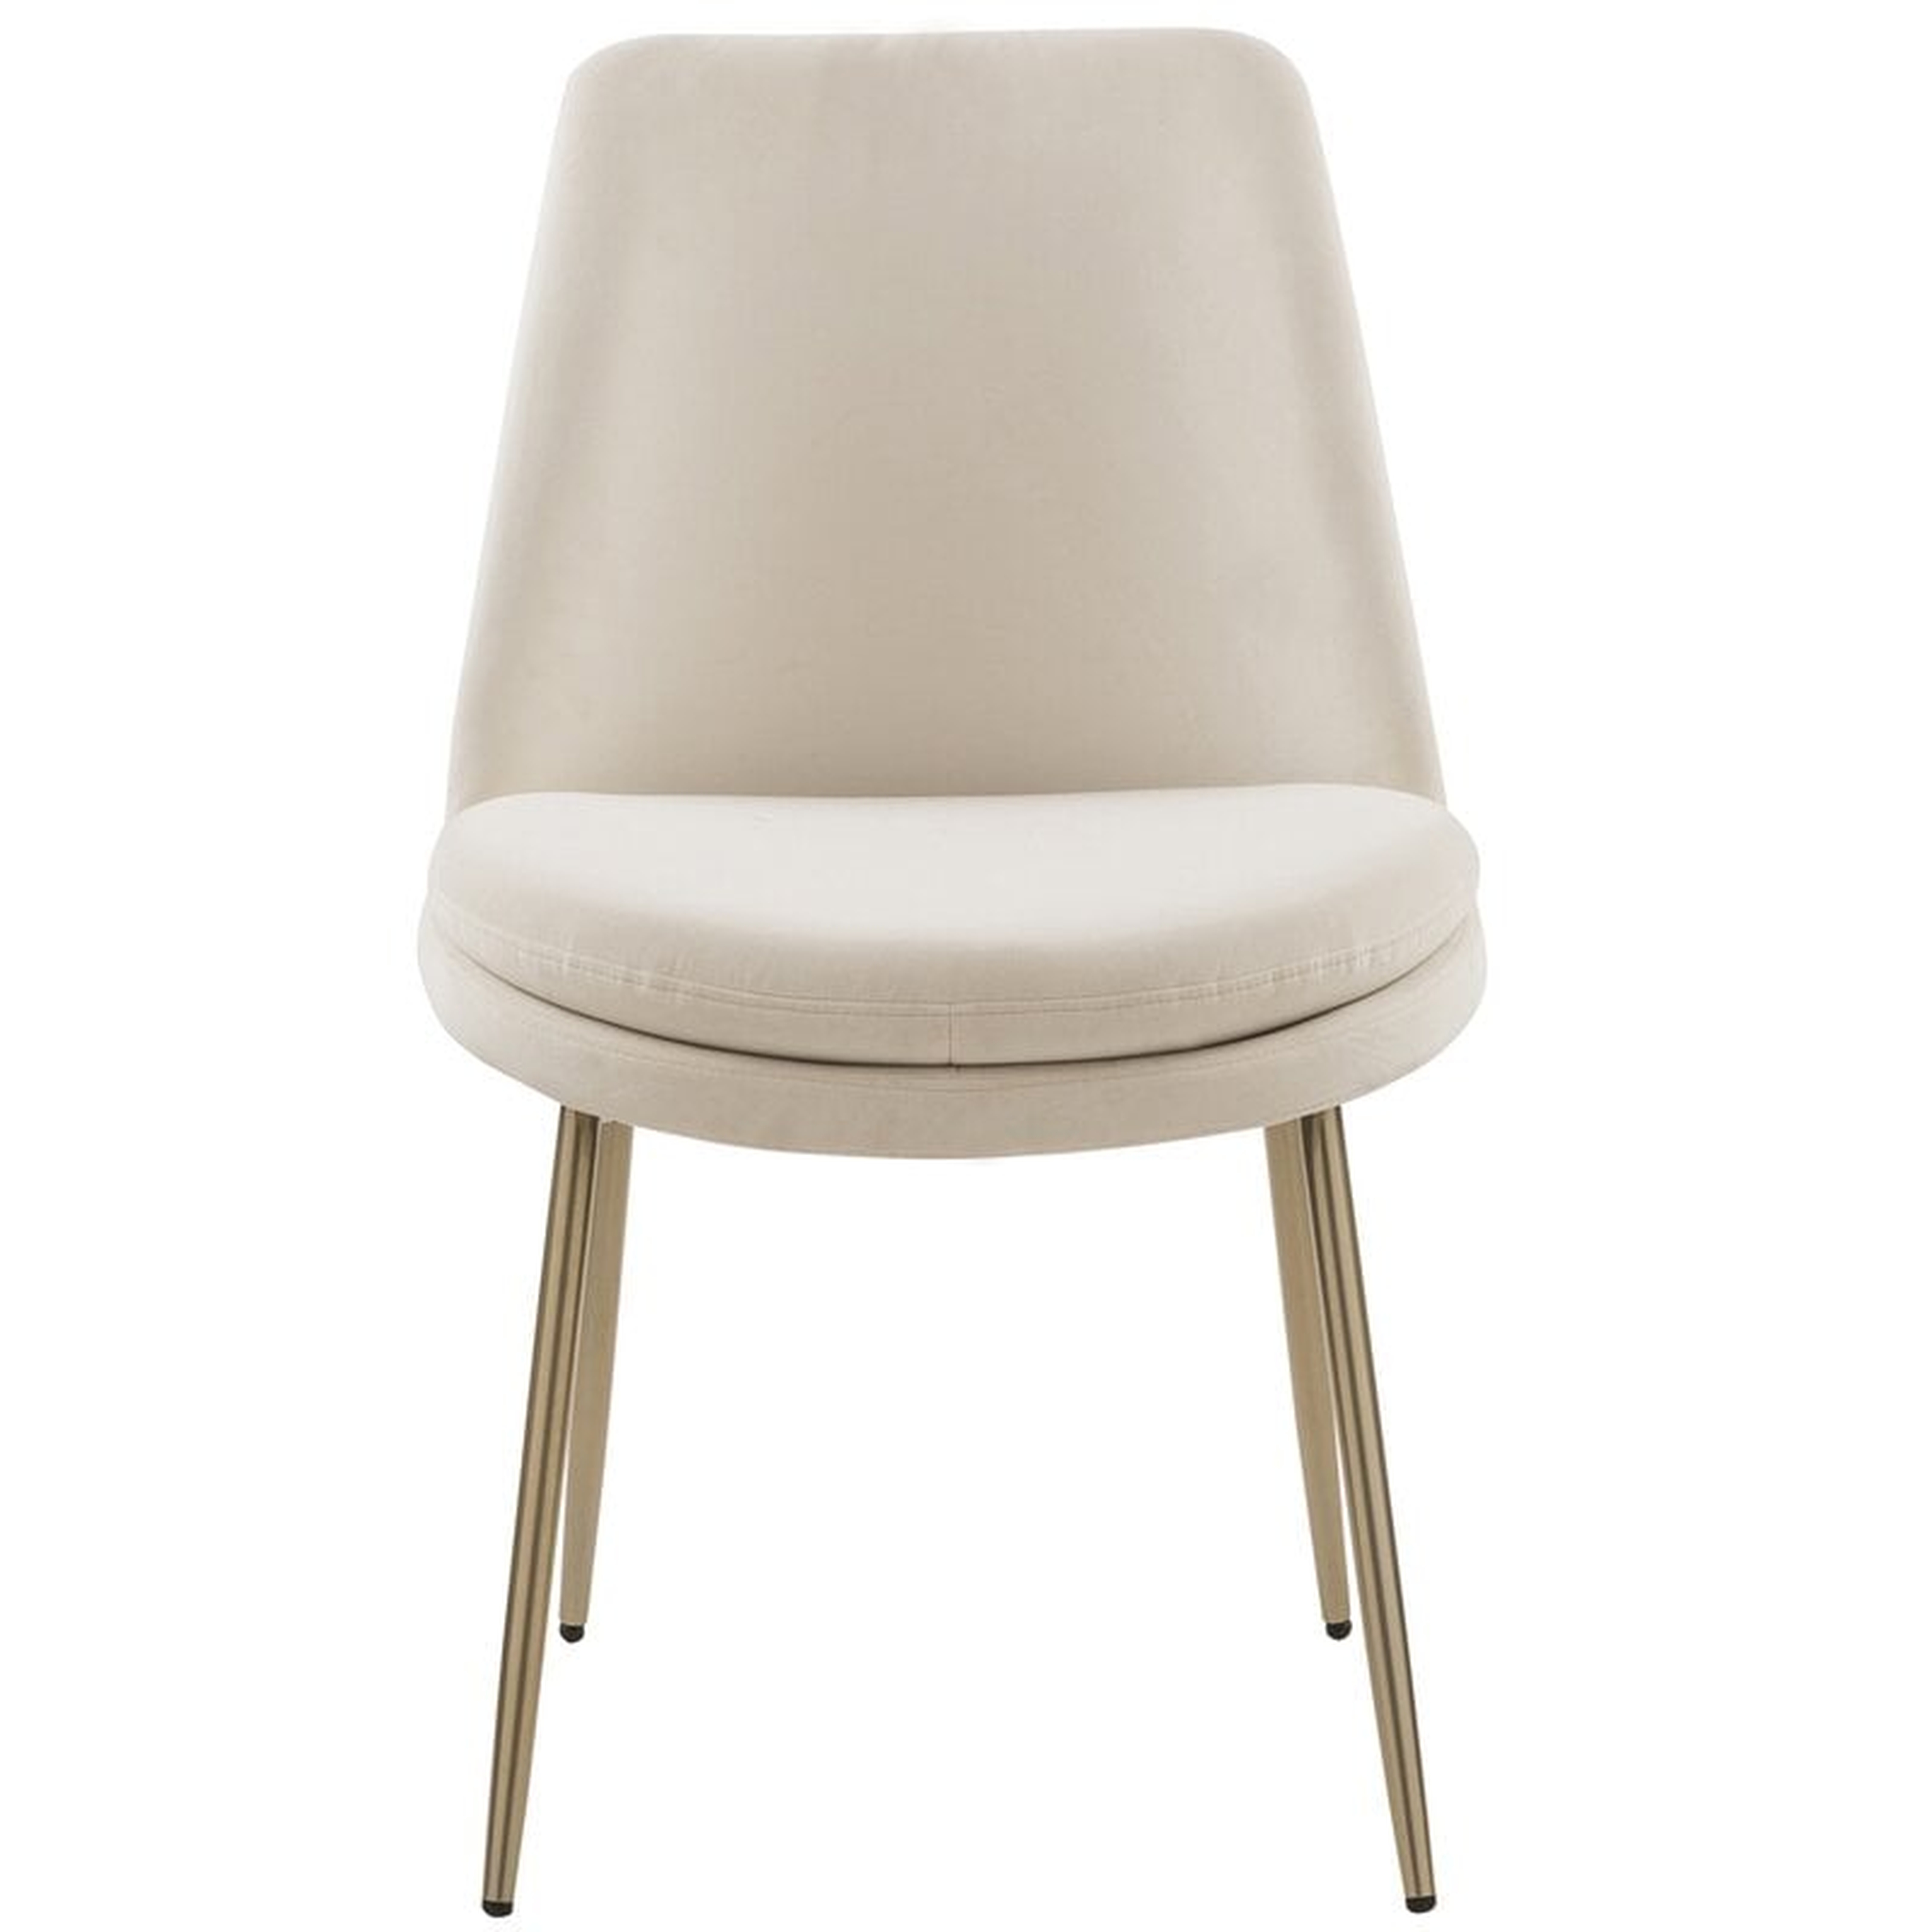 Blencoe Upholstered Side Chair - Set of 2 - Wayfair